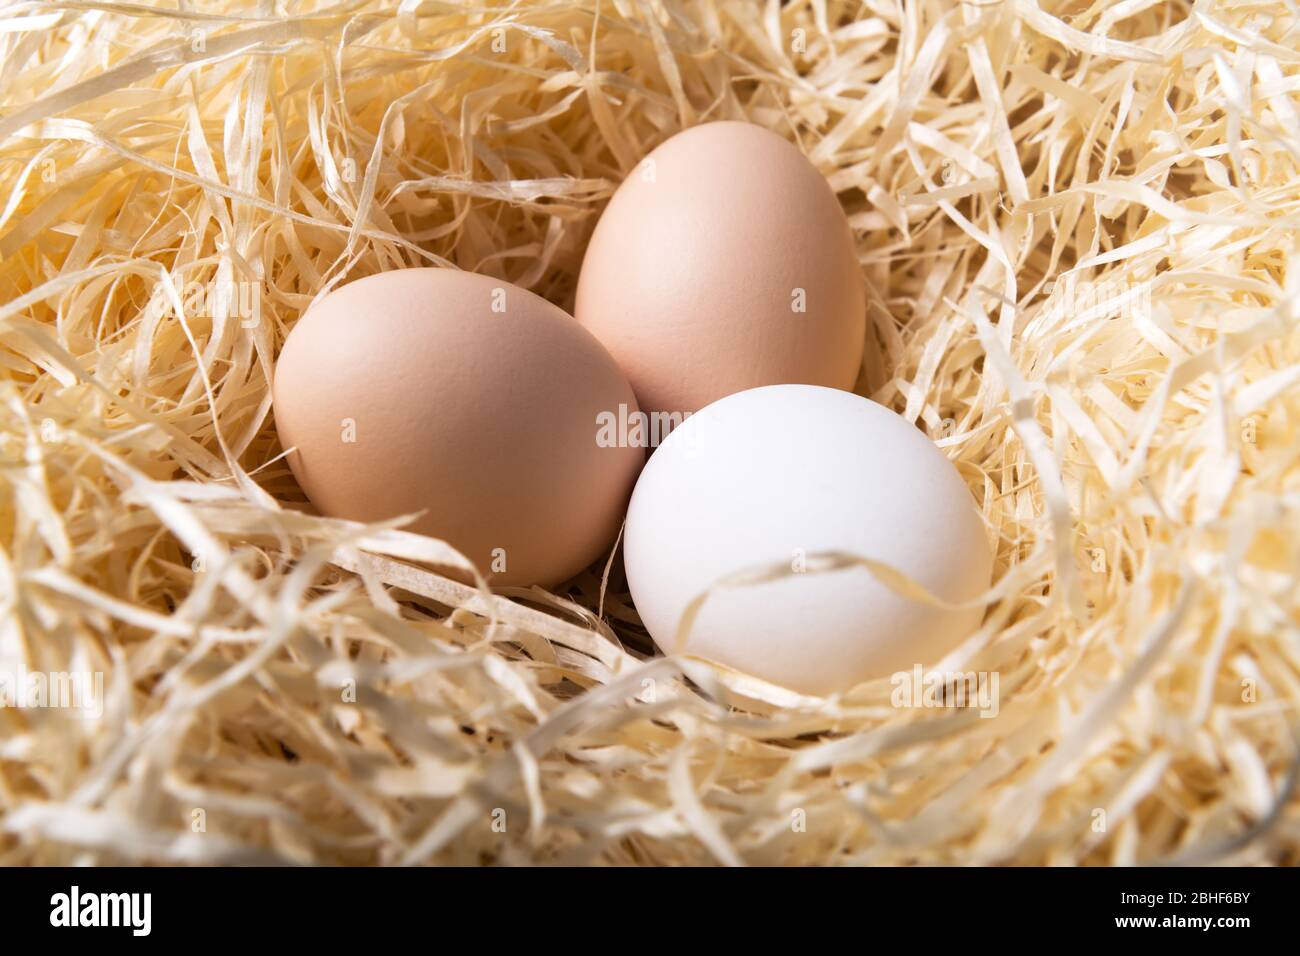 Œufs de poulet biologiques dans la fermeture du nid. Photographie alimentaire Banque D'Images